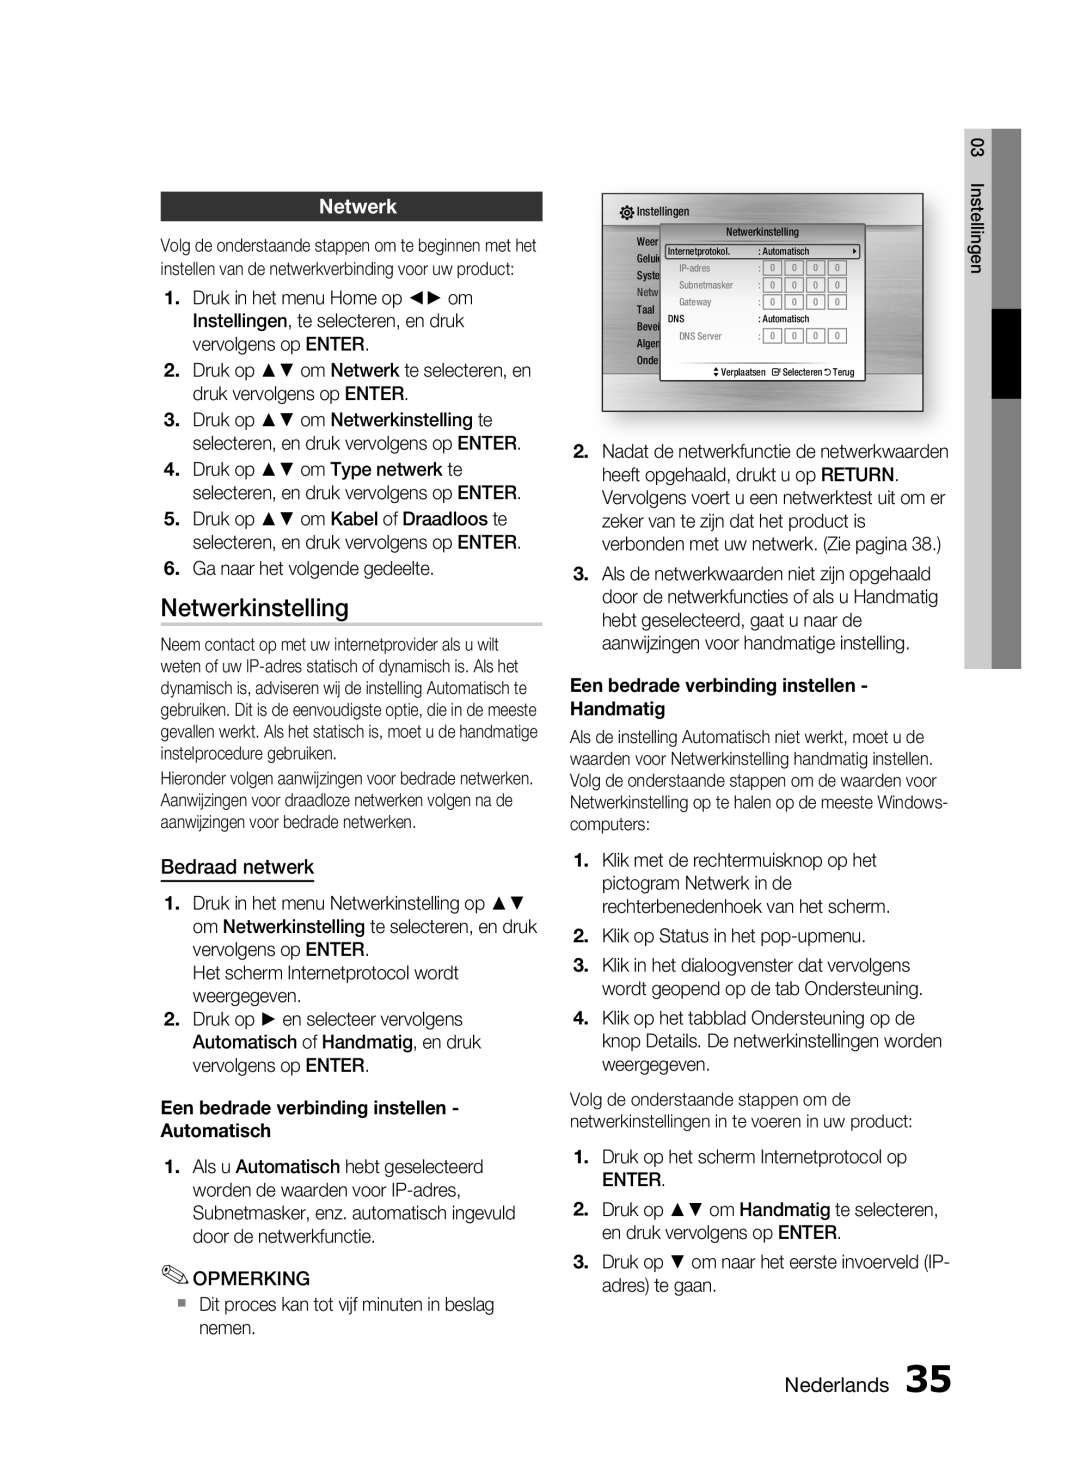 Samsung HT-C6200/XEF manual Netwerkinstelling, Bedraad netwerk, Een bedrade verbinding instellen Handmatig, Nederlands 